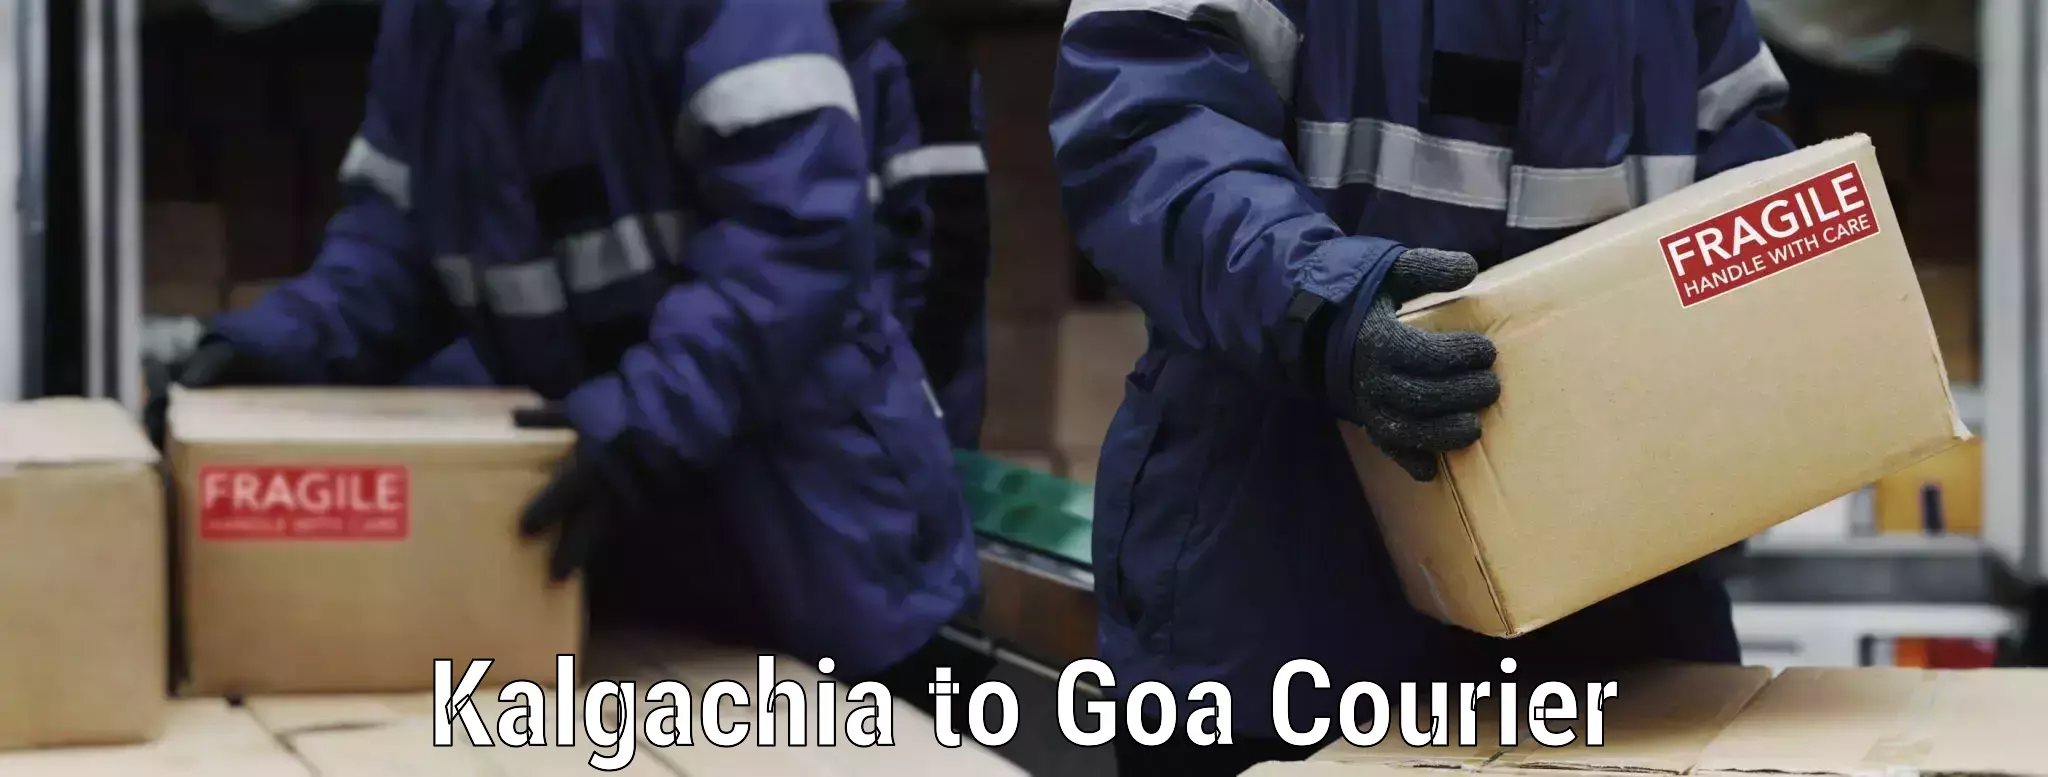 Full-service movers Kalgachia to Goa